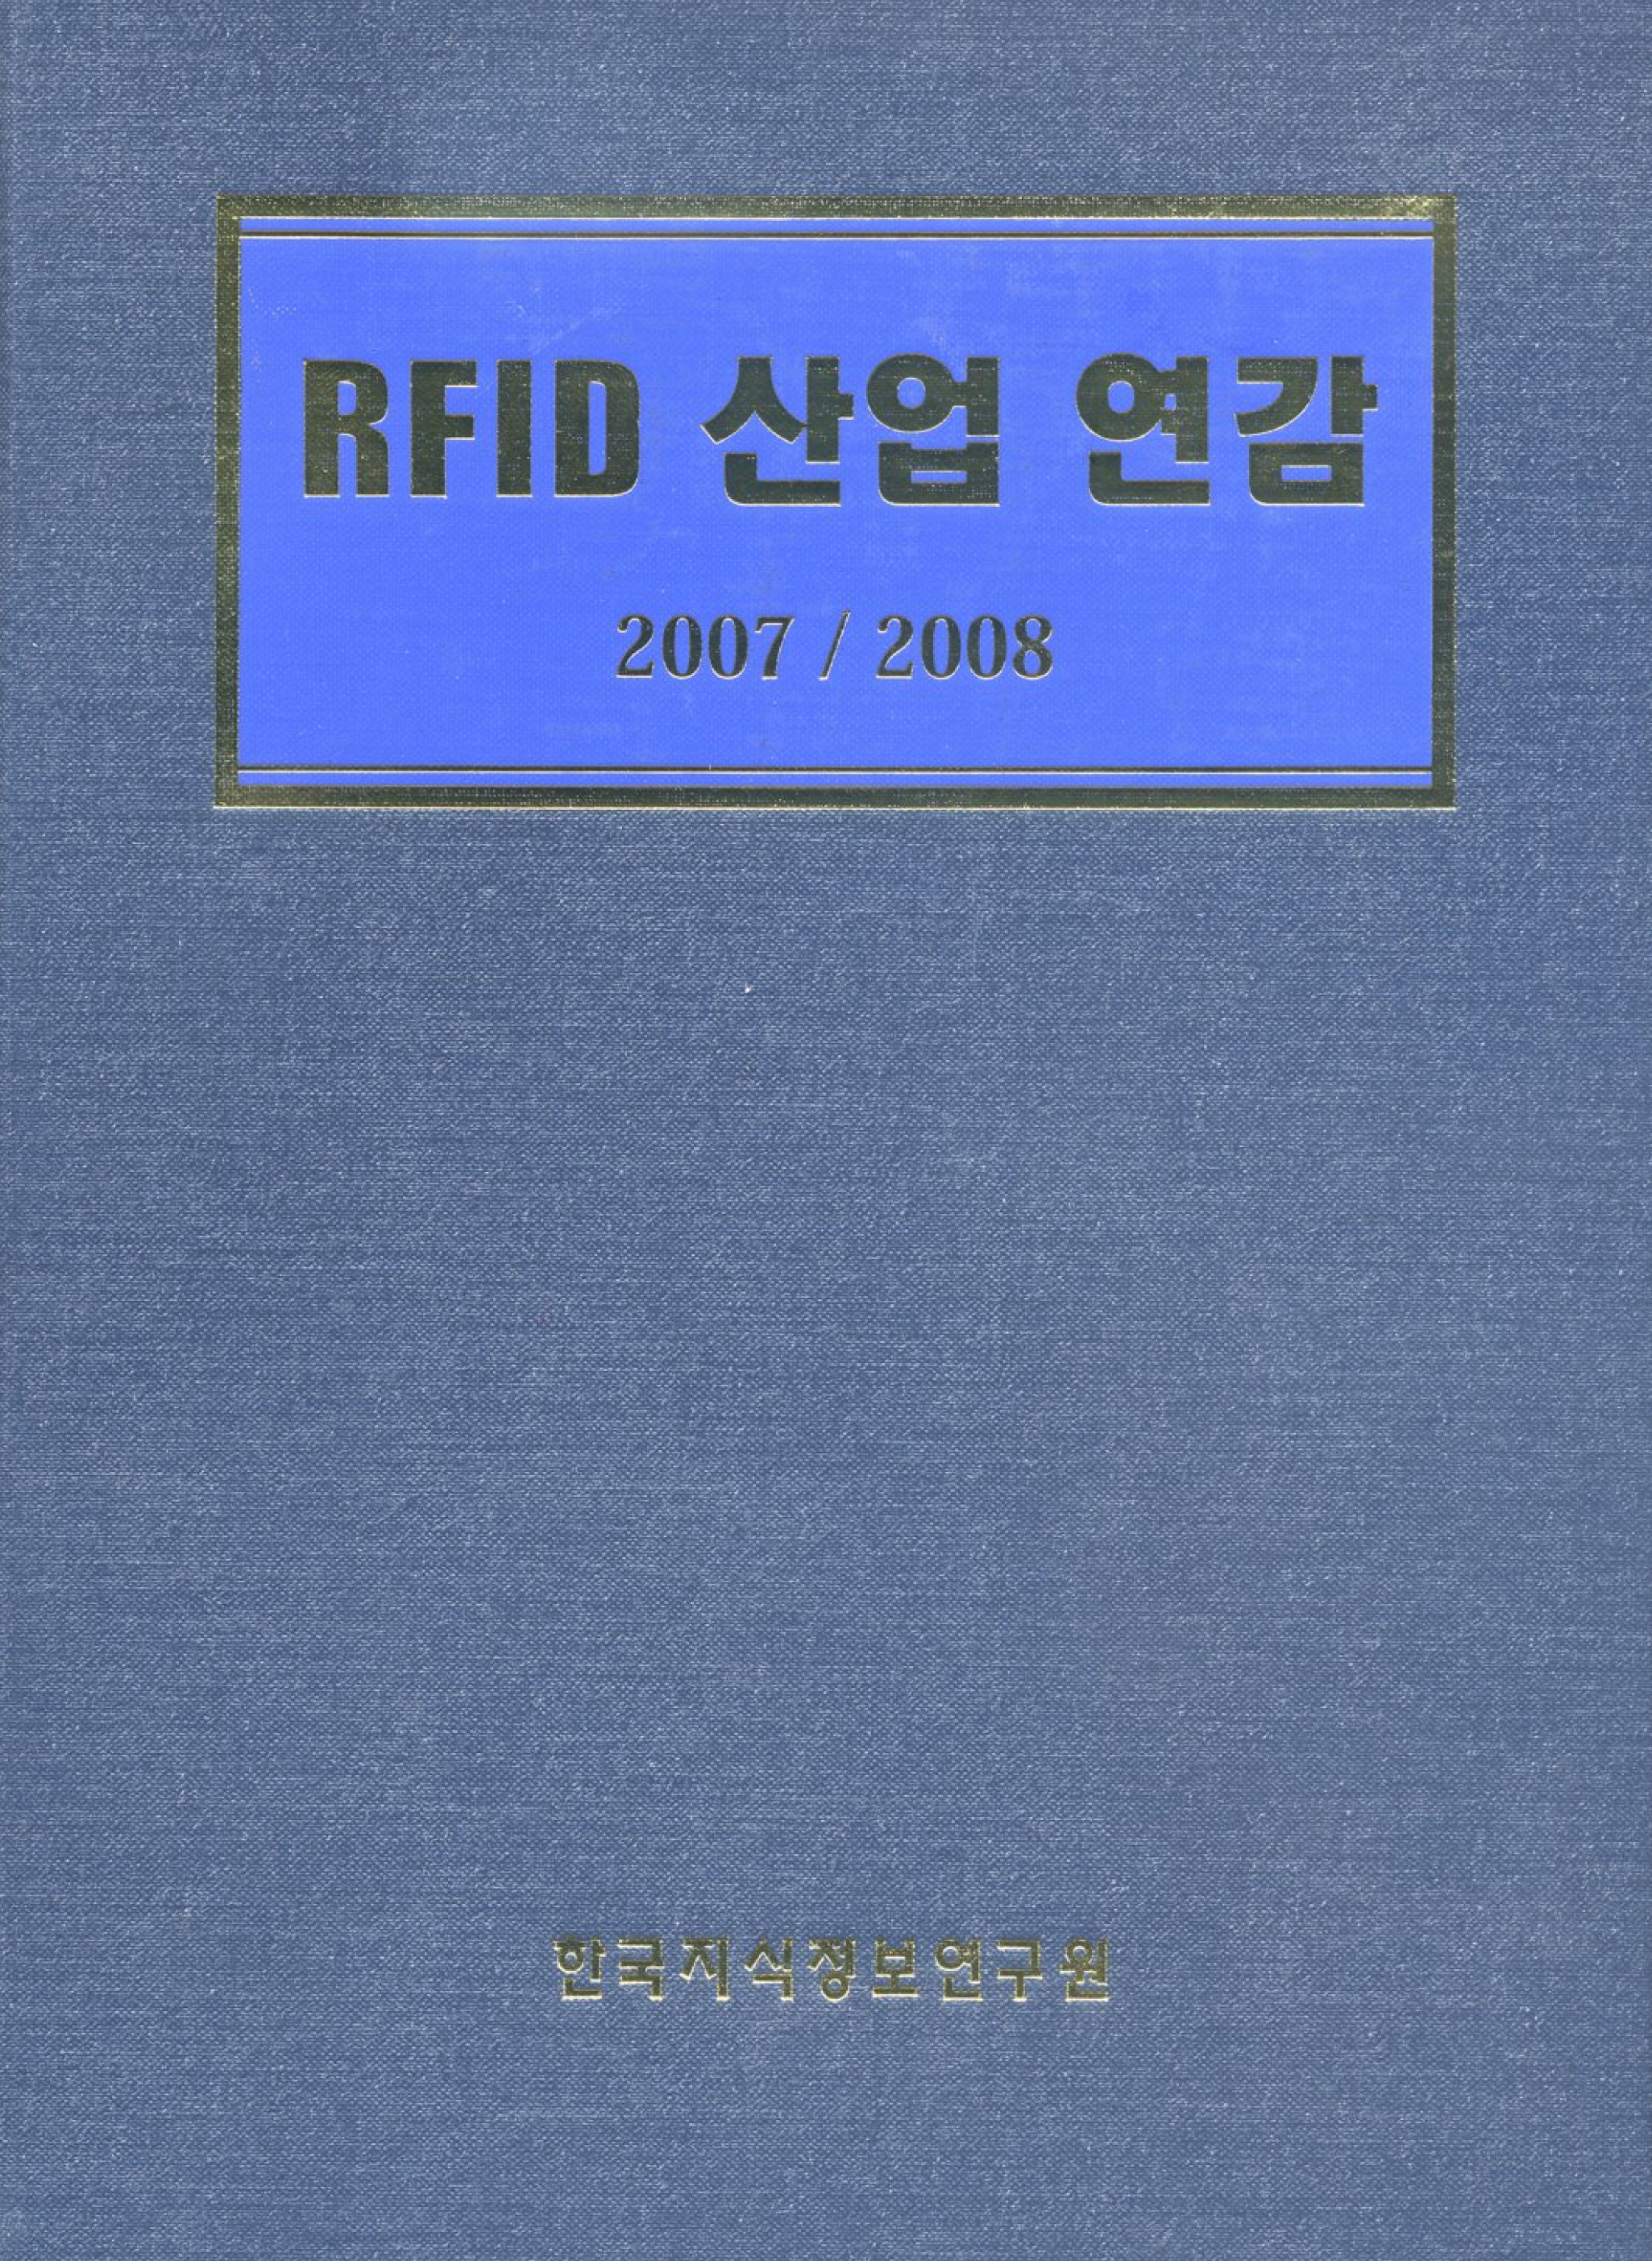 RFID 산업 연감